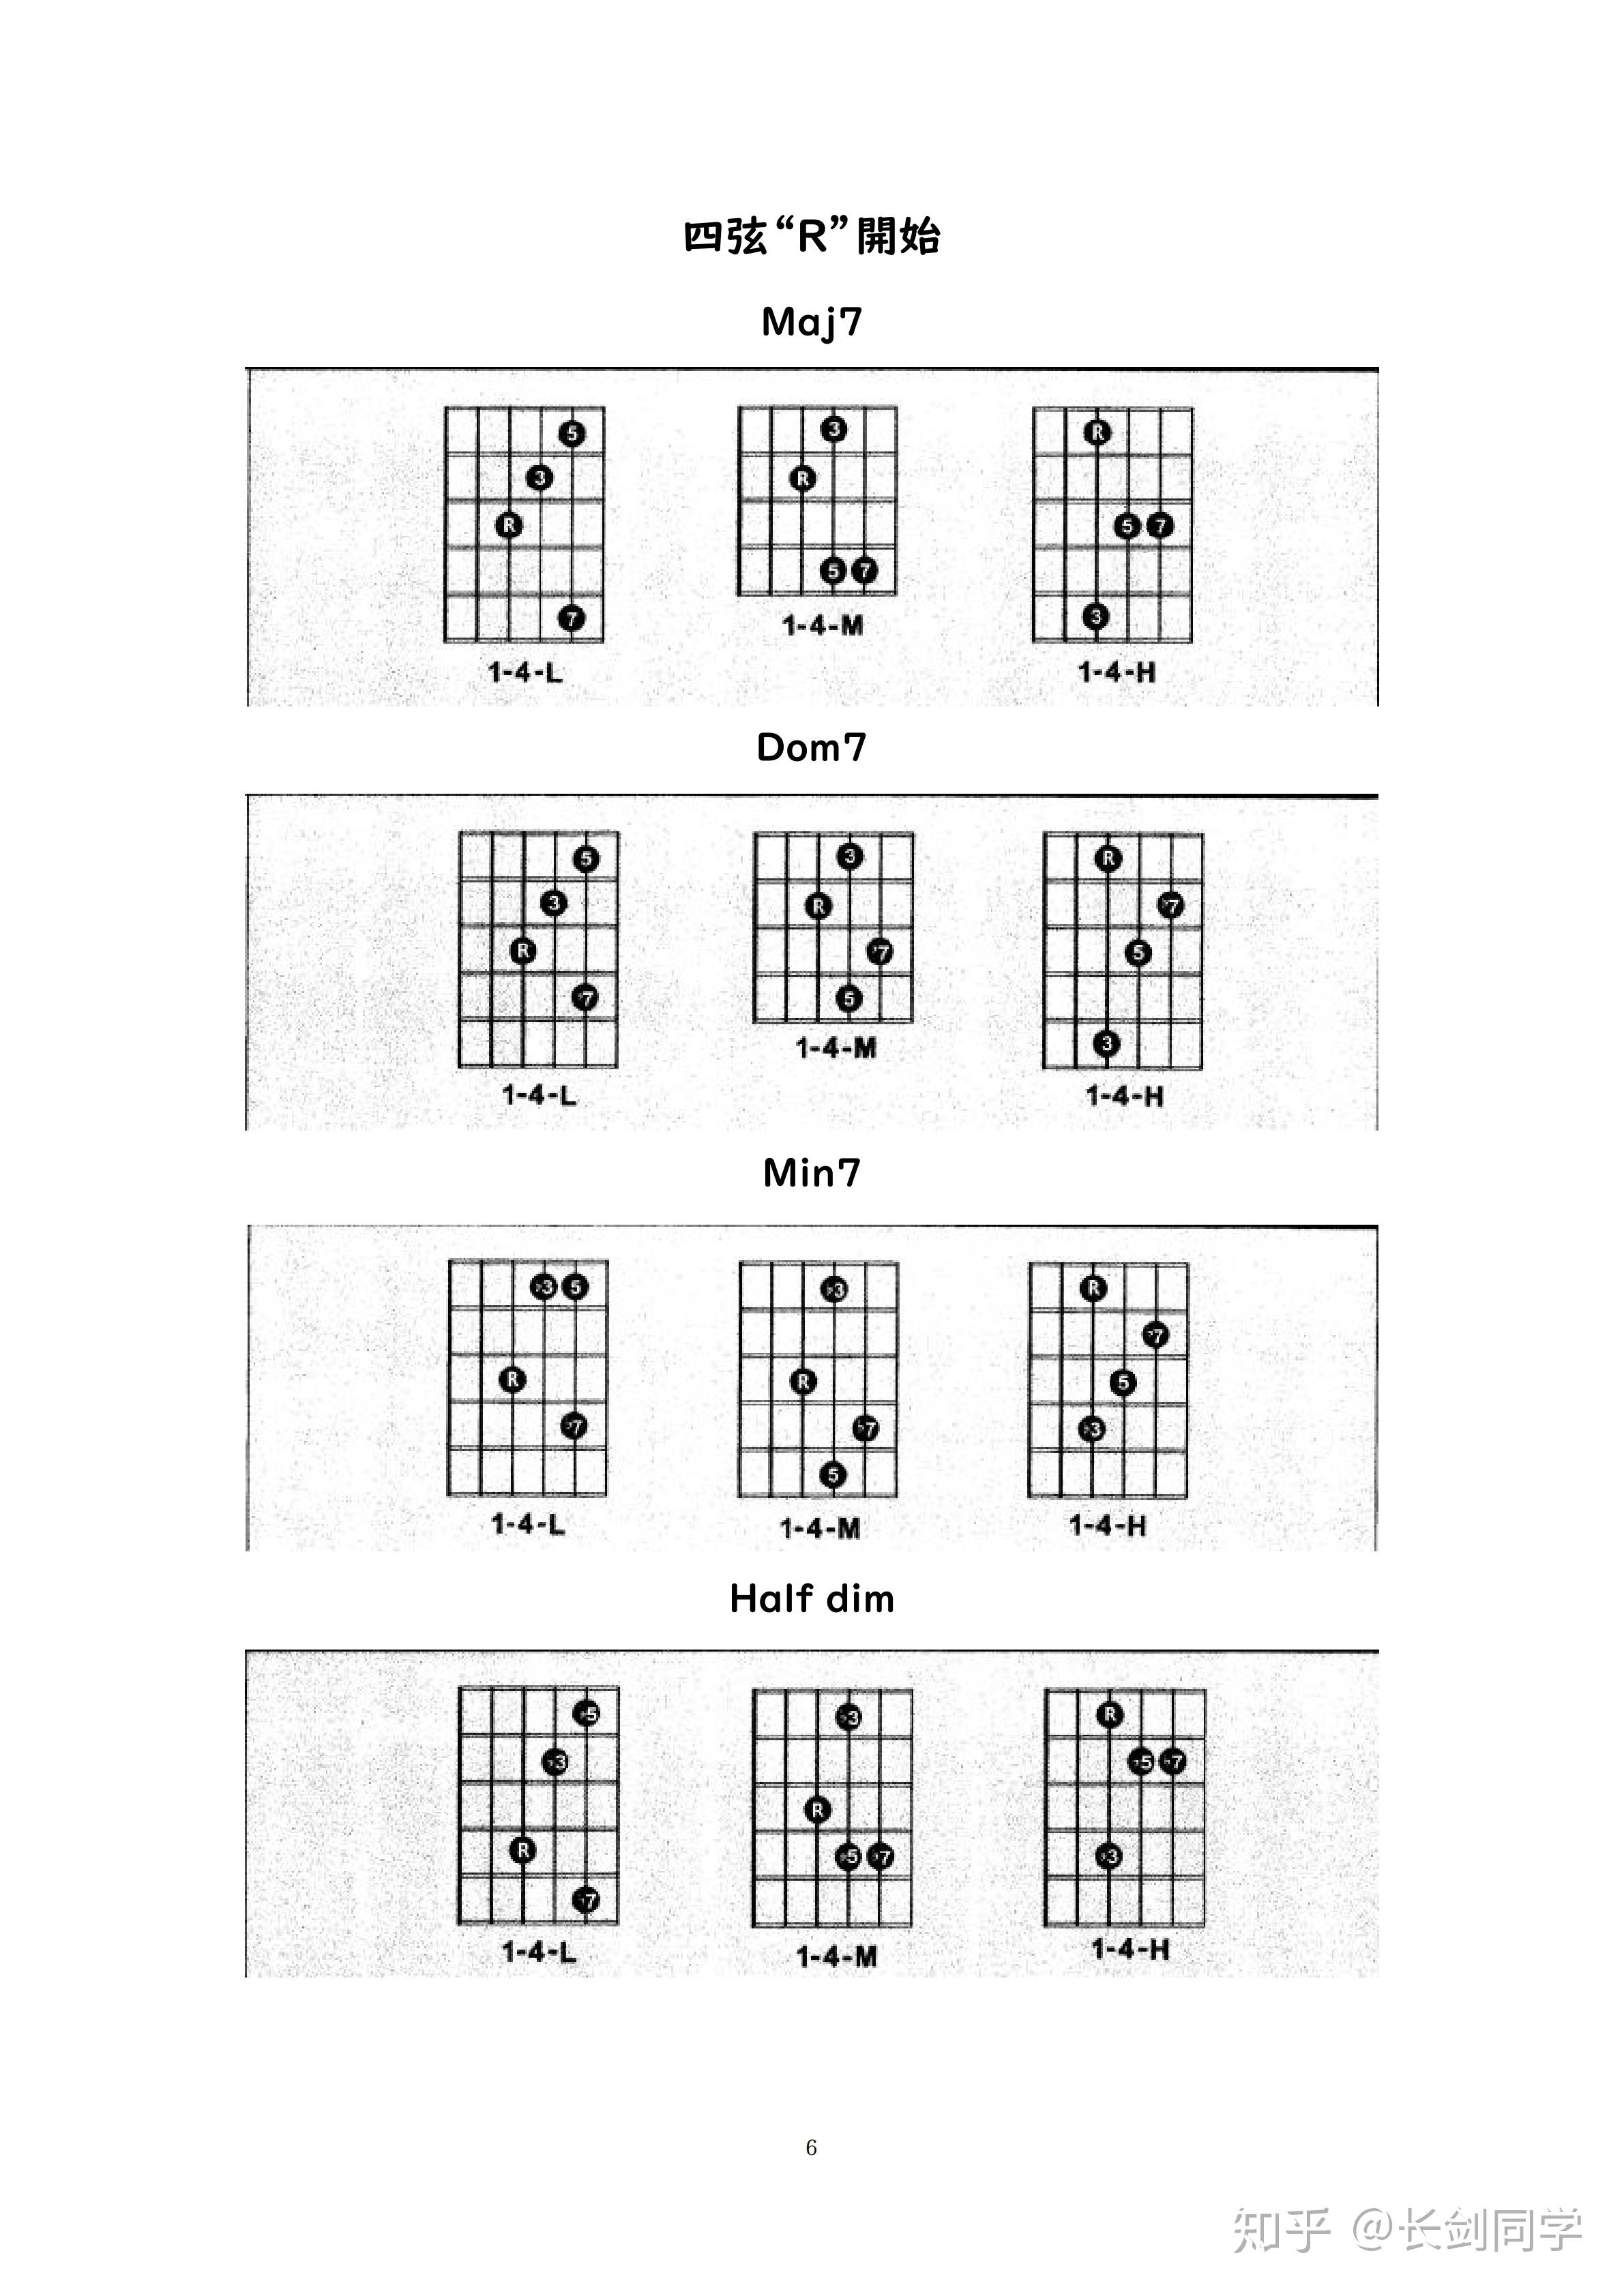 吉他基础和弦的按法（一张图搞懂吉他和弦及指法原理）-秒懂财税